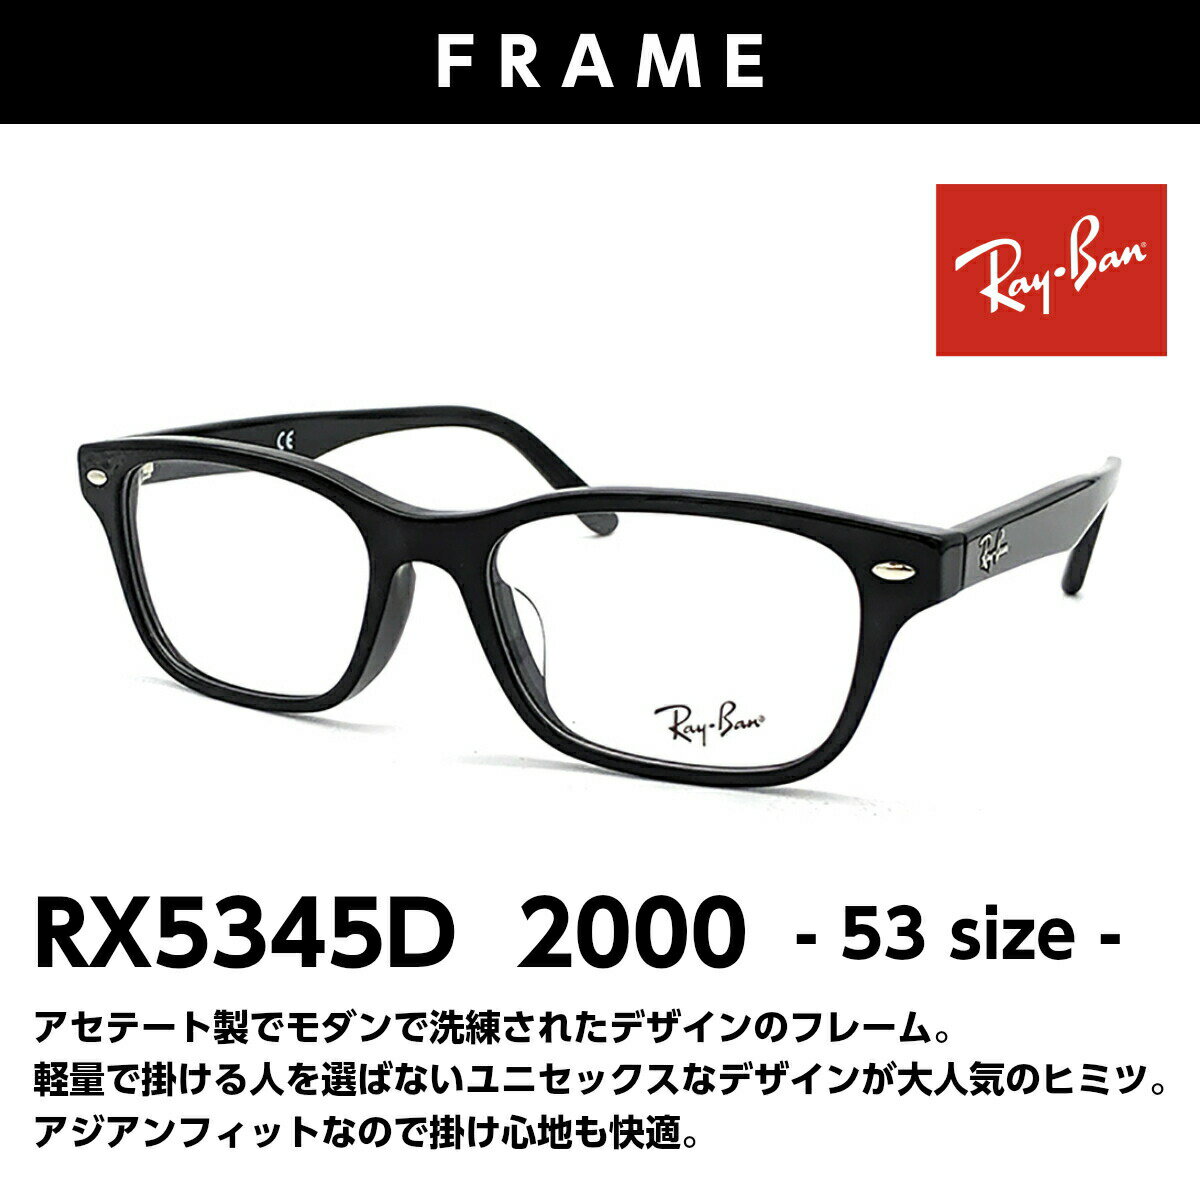 レイバン 老眼鏡 RX5345D 2000 アジアンフィット 黒縁 黒 めがね 眼鏡 度付き 紫外線 UVカット ブルーライトカット メガネ プレゼント ギフト RayBan